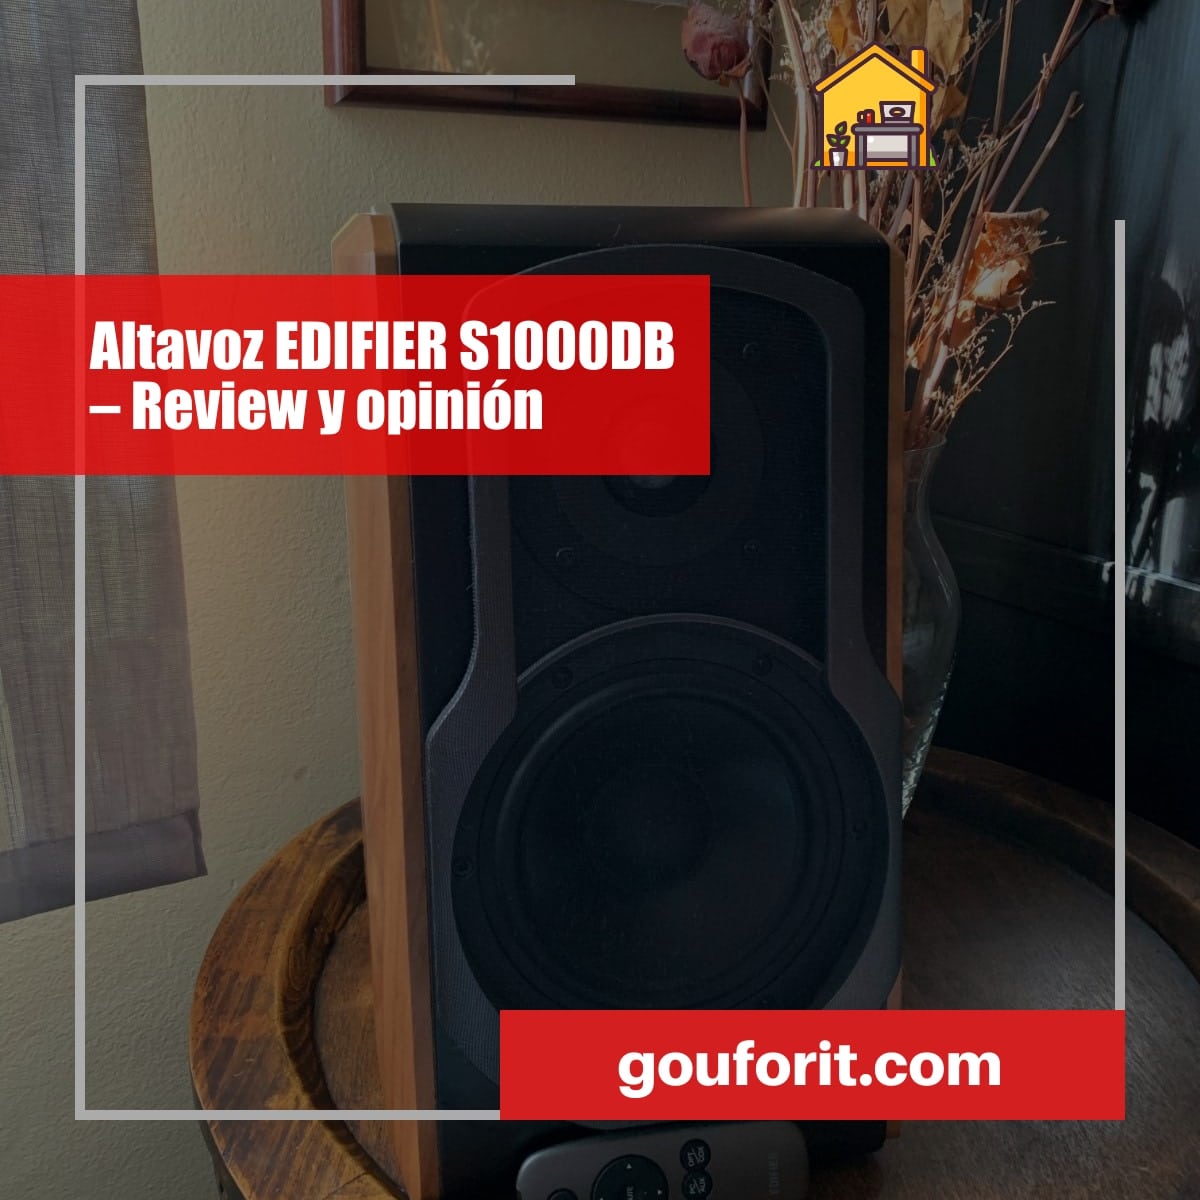 Altavoz EDIFIER S1000DB – Review y opinión